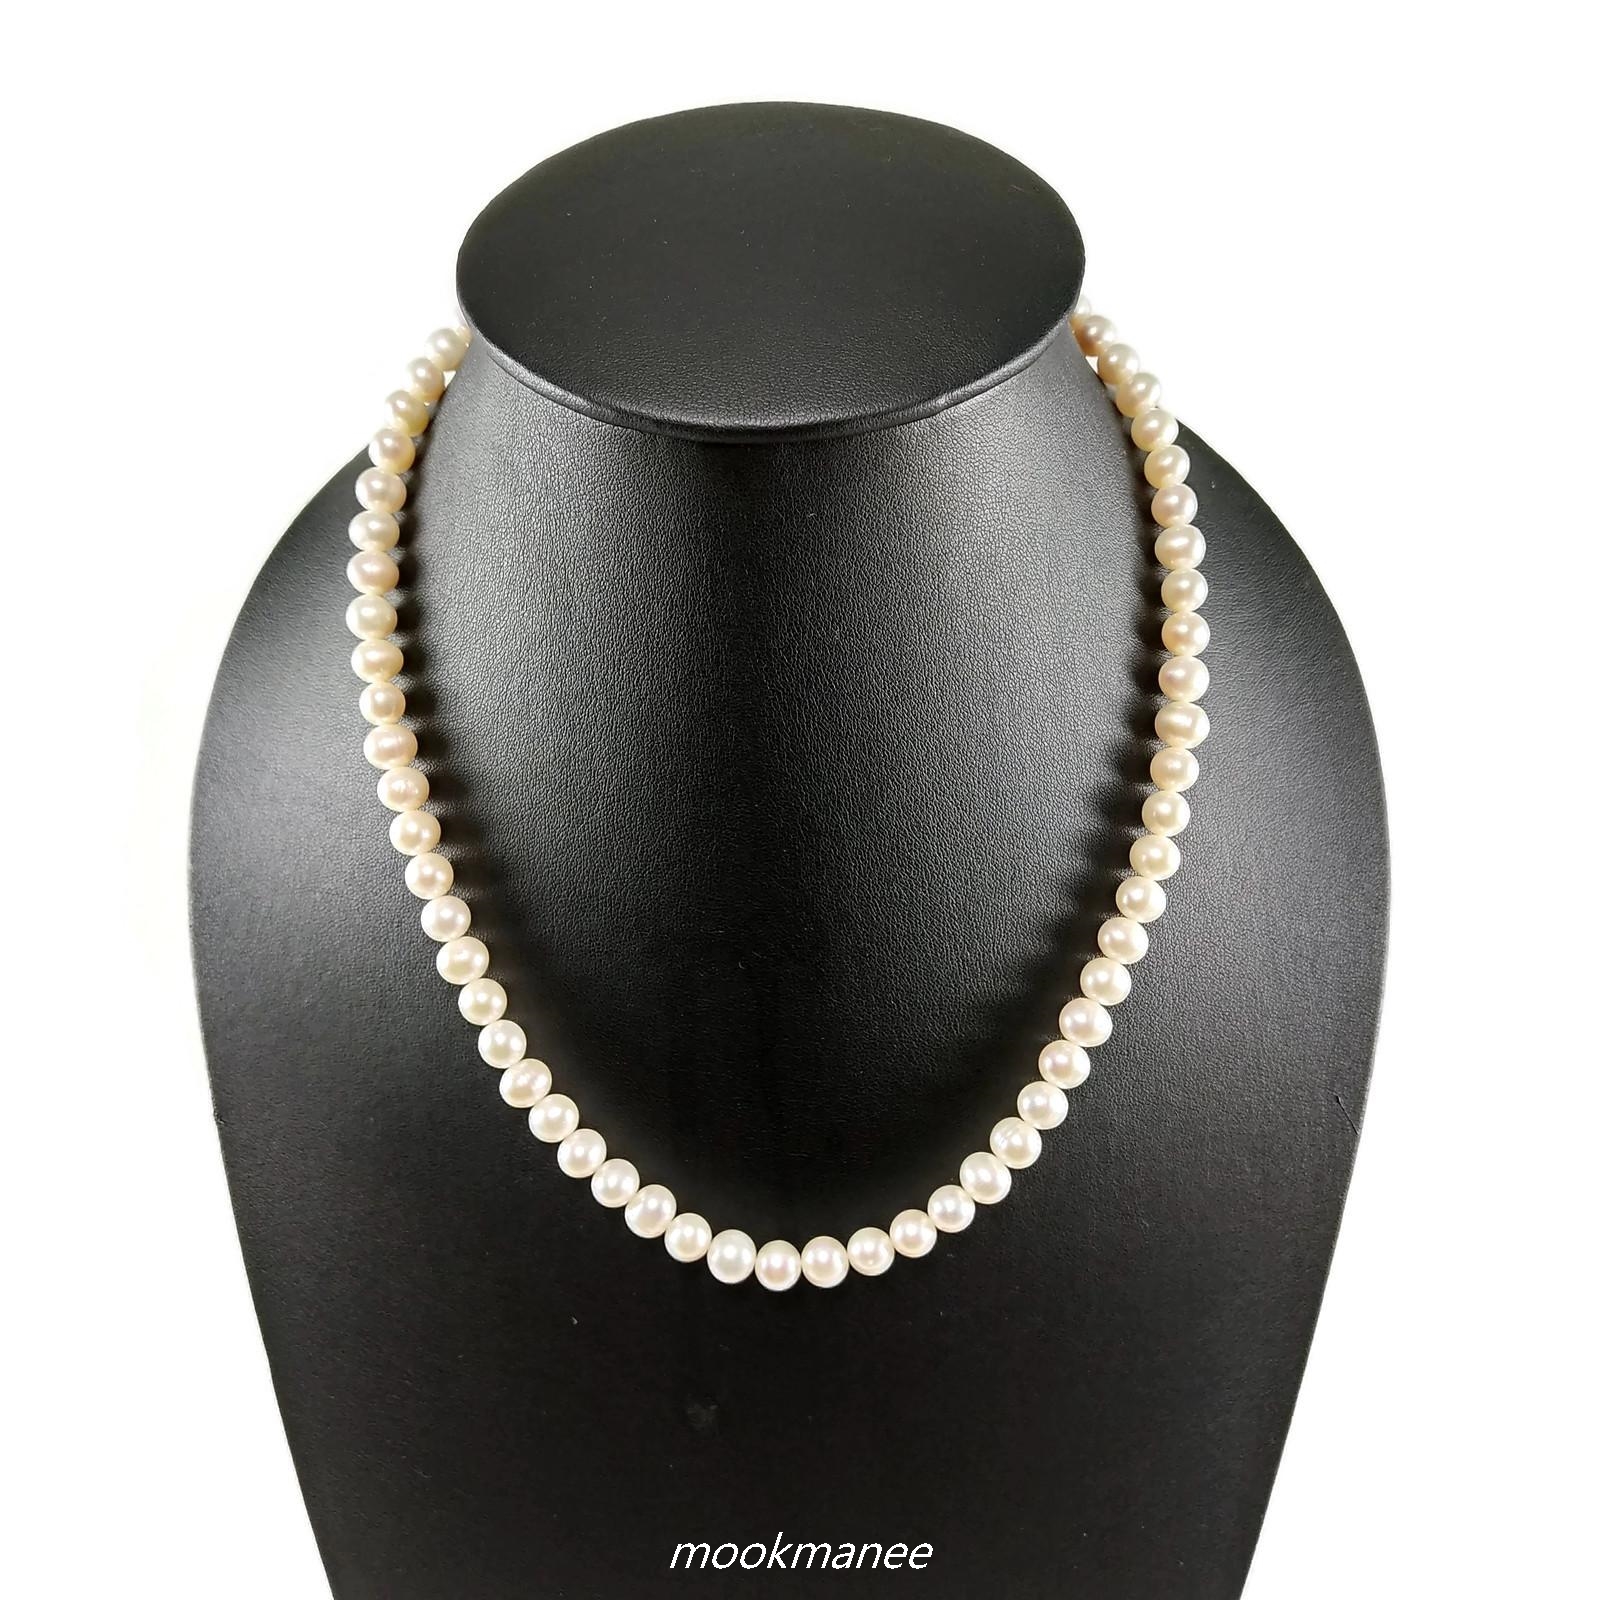 สวยเรียบหรู สร้อยคอไข่มุกแท้อันดามันภูเก็ต สีขาว เม็ดไข่มุกขนาด 7-8 มม.-White color real pearl necklace Beads size 7-8 mm. ส่งด่วนฟรี ของแท้ 100% เก็บเงินปลายทางได้